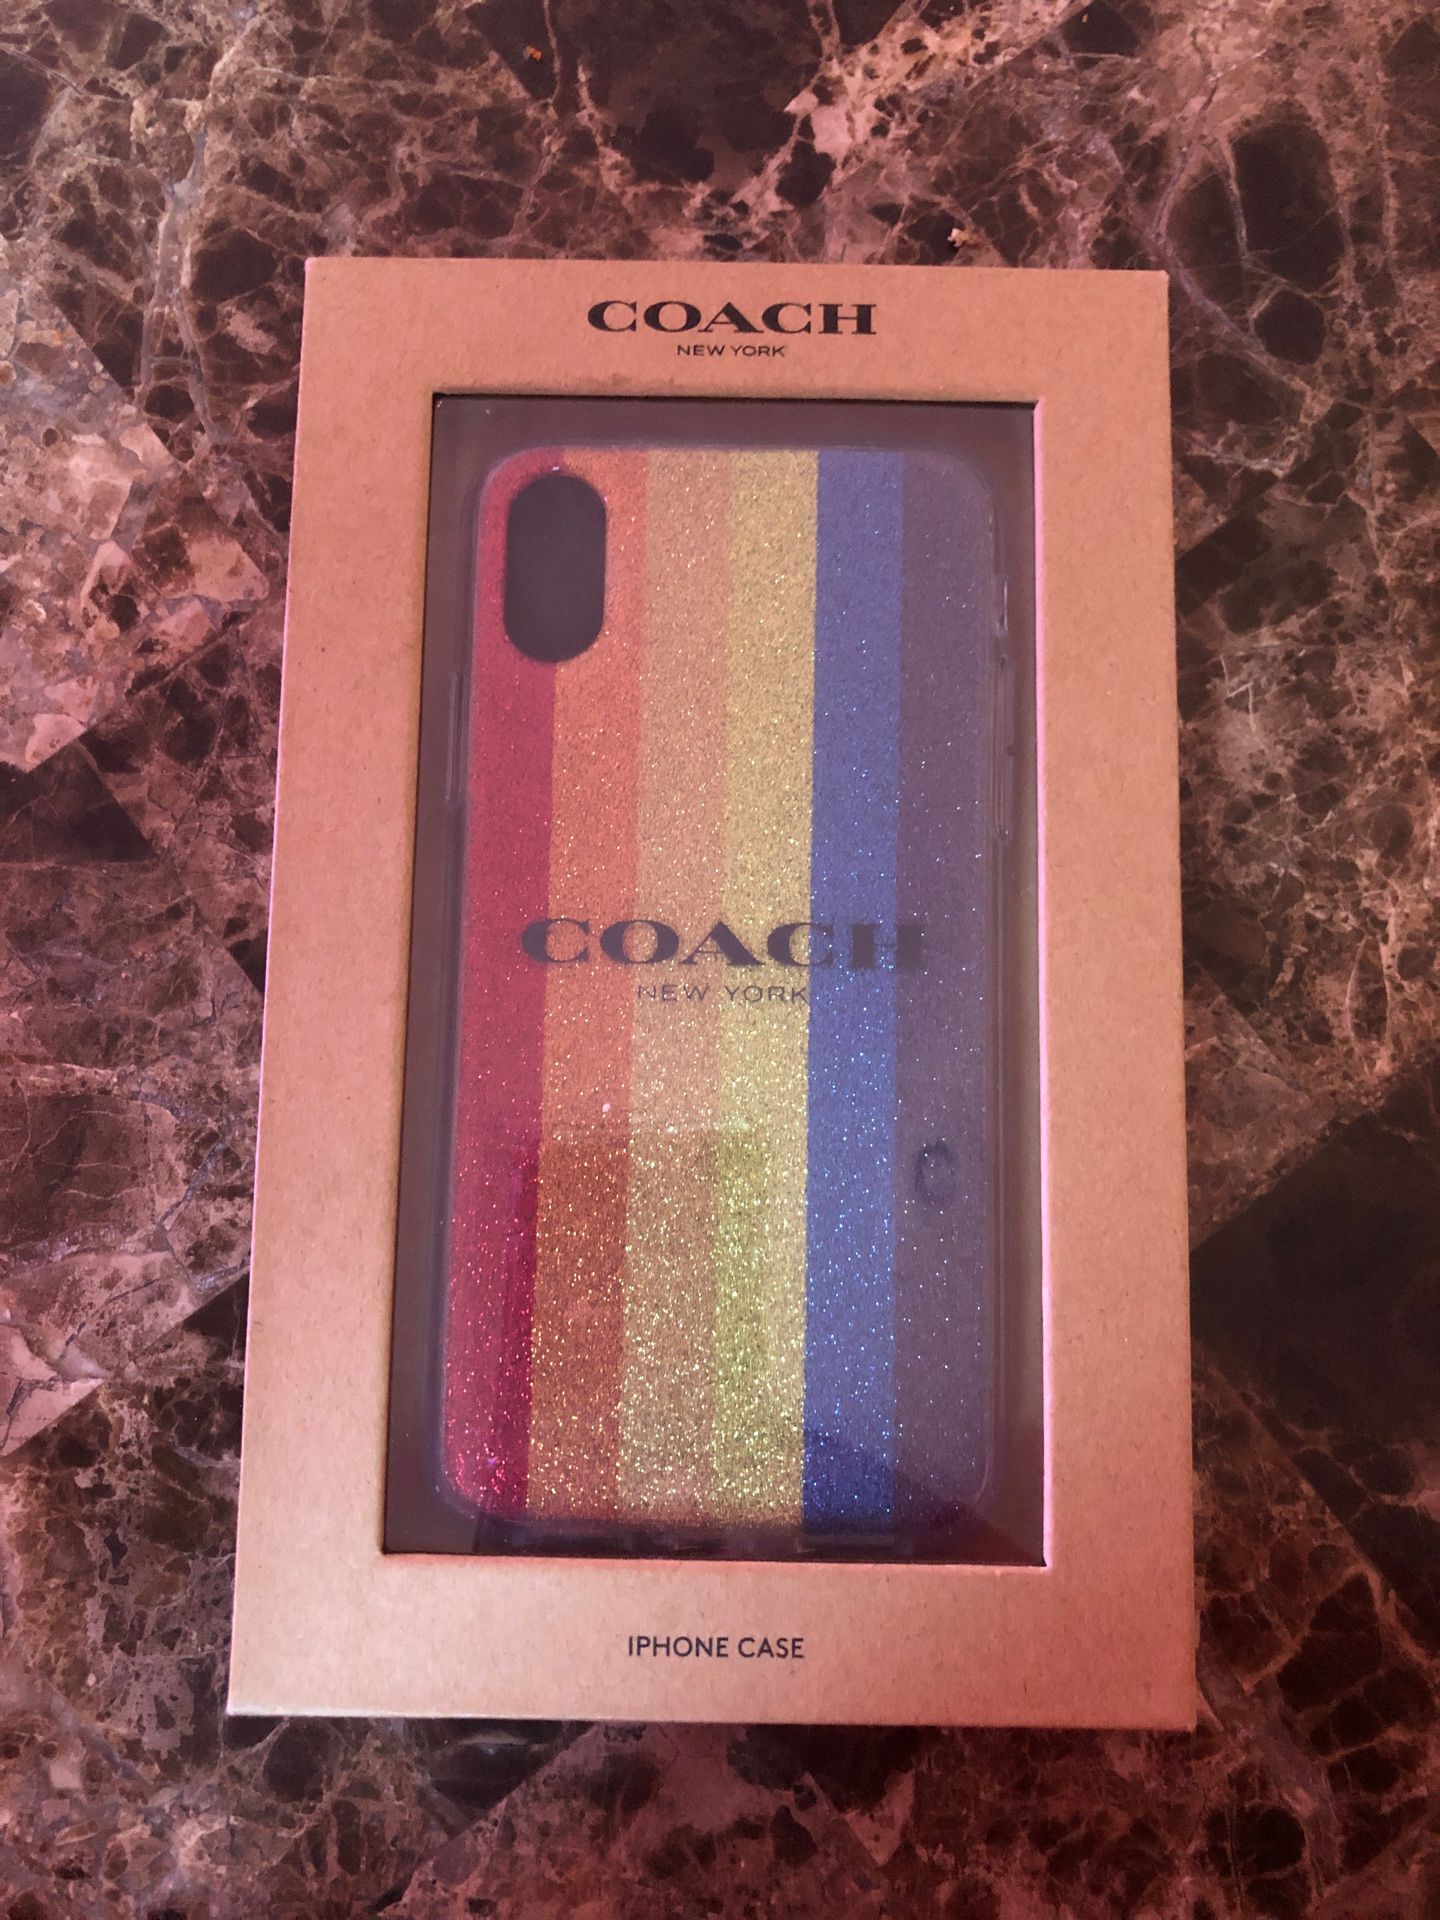 Coach IPhone case